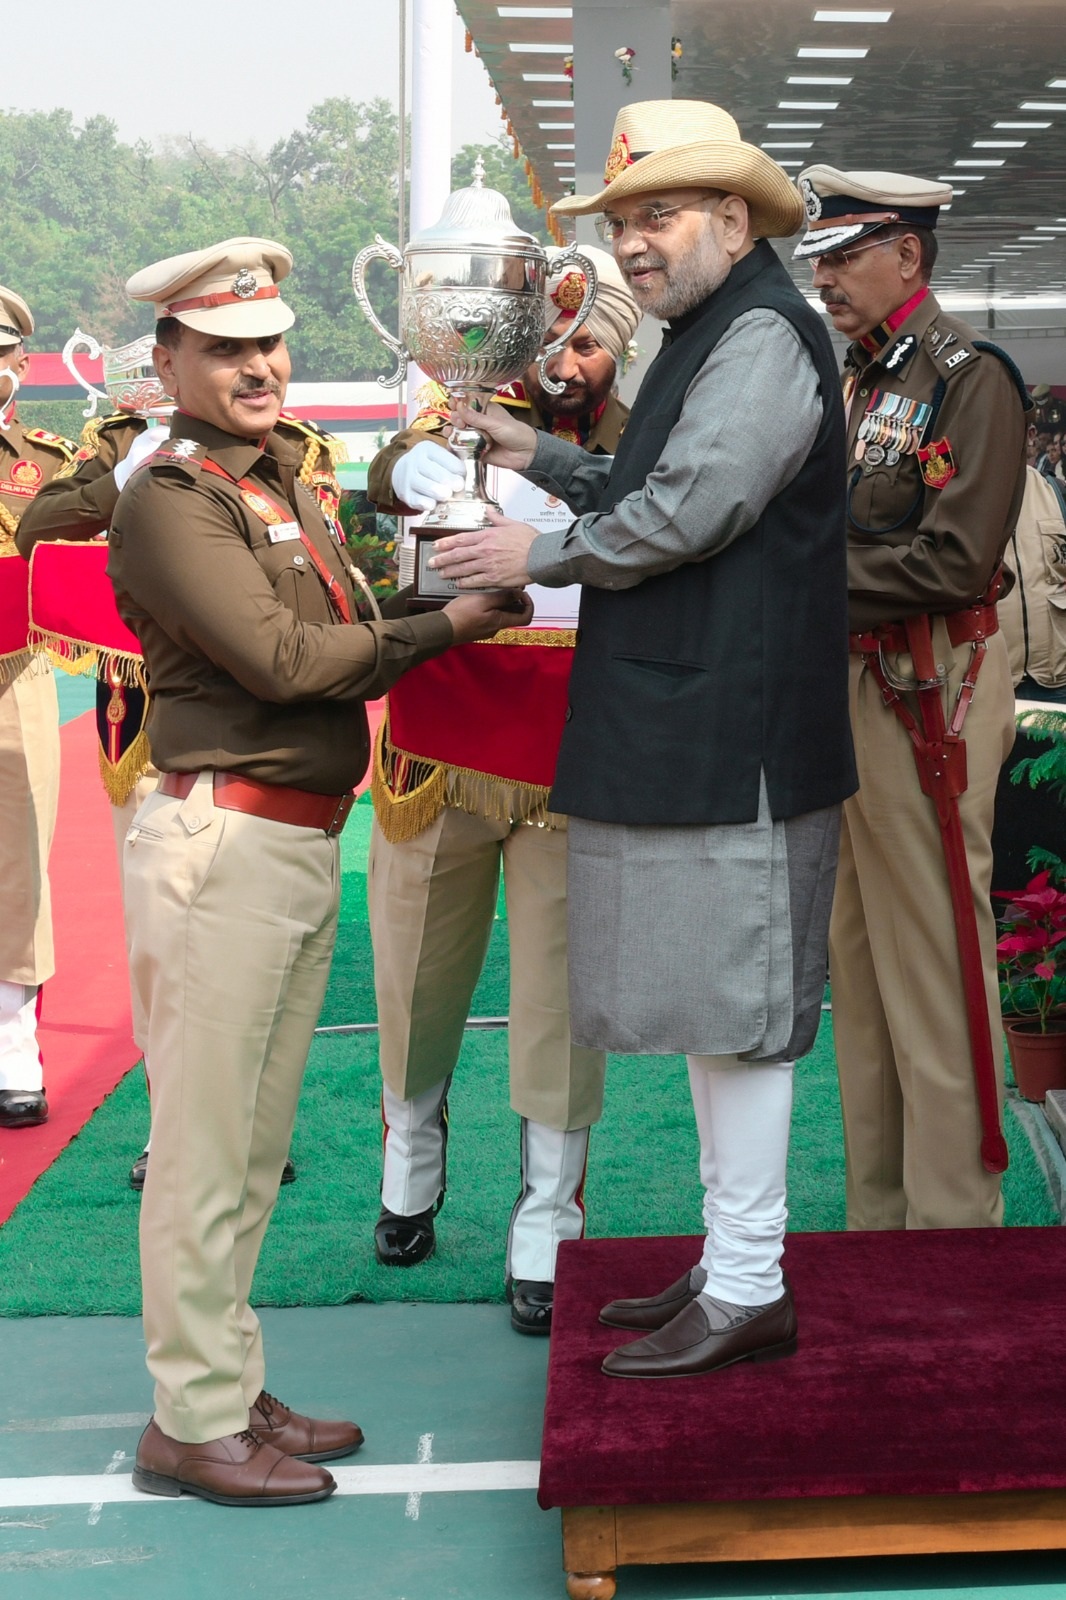 Delhi News: कोरोना में पुलिस ने जिम्मेदारी से ड्यूटी को निभाया:अमित शाह